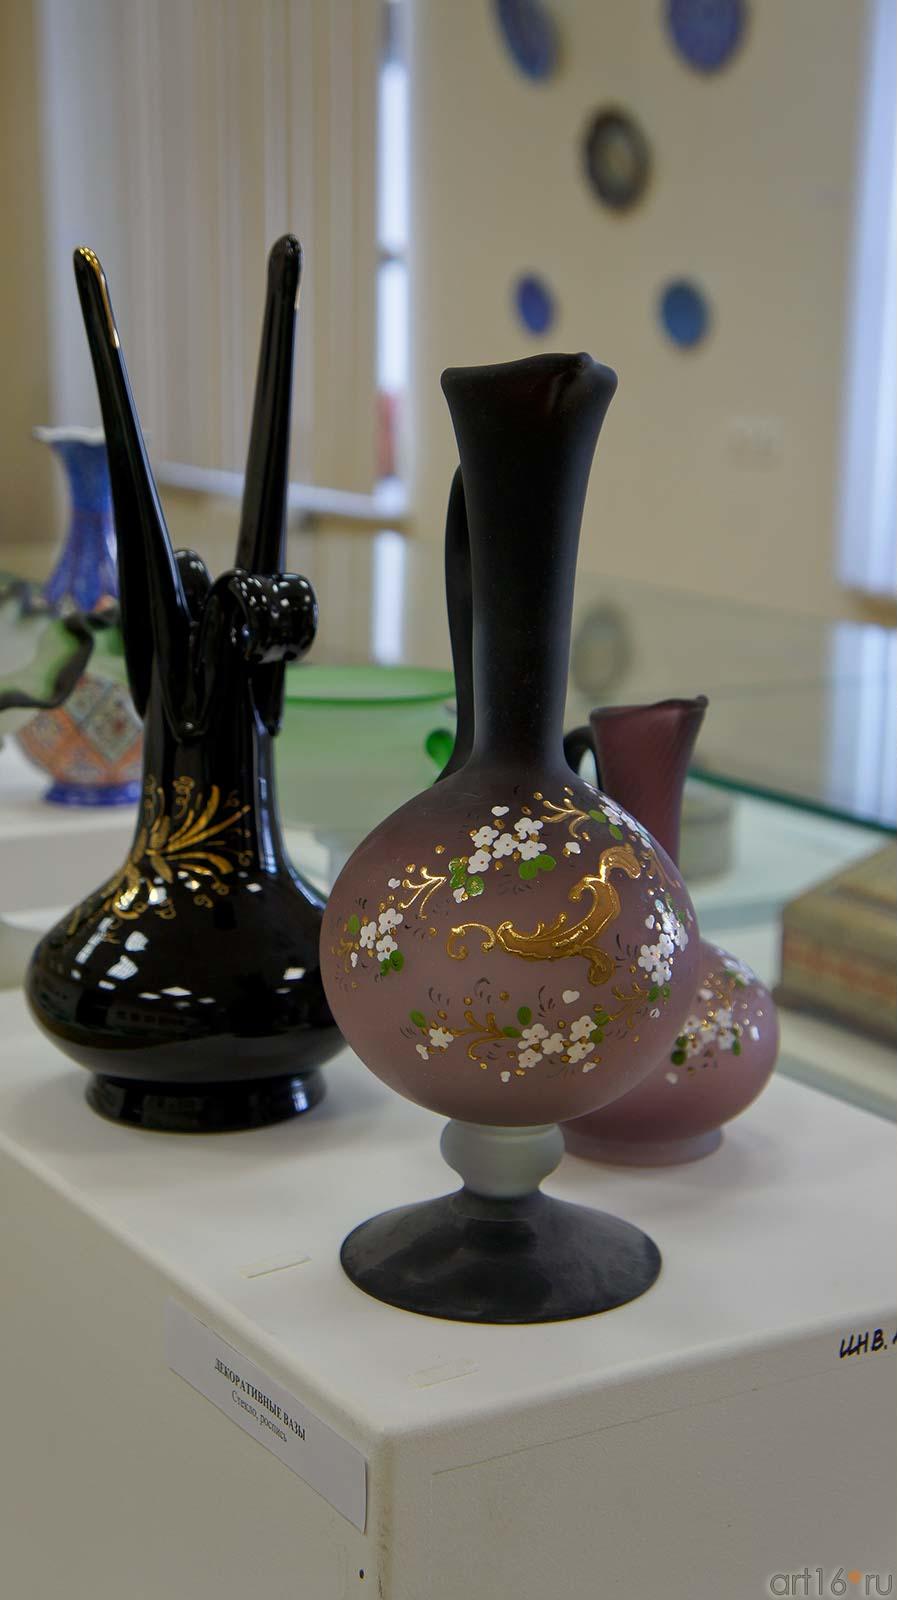 Декоративные вазы. Стекло, роспись::Иран в зеркале искусства